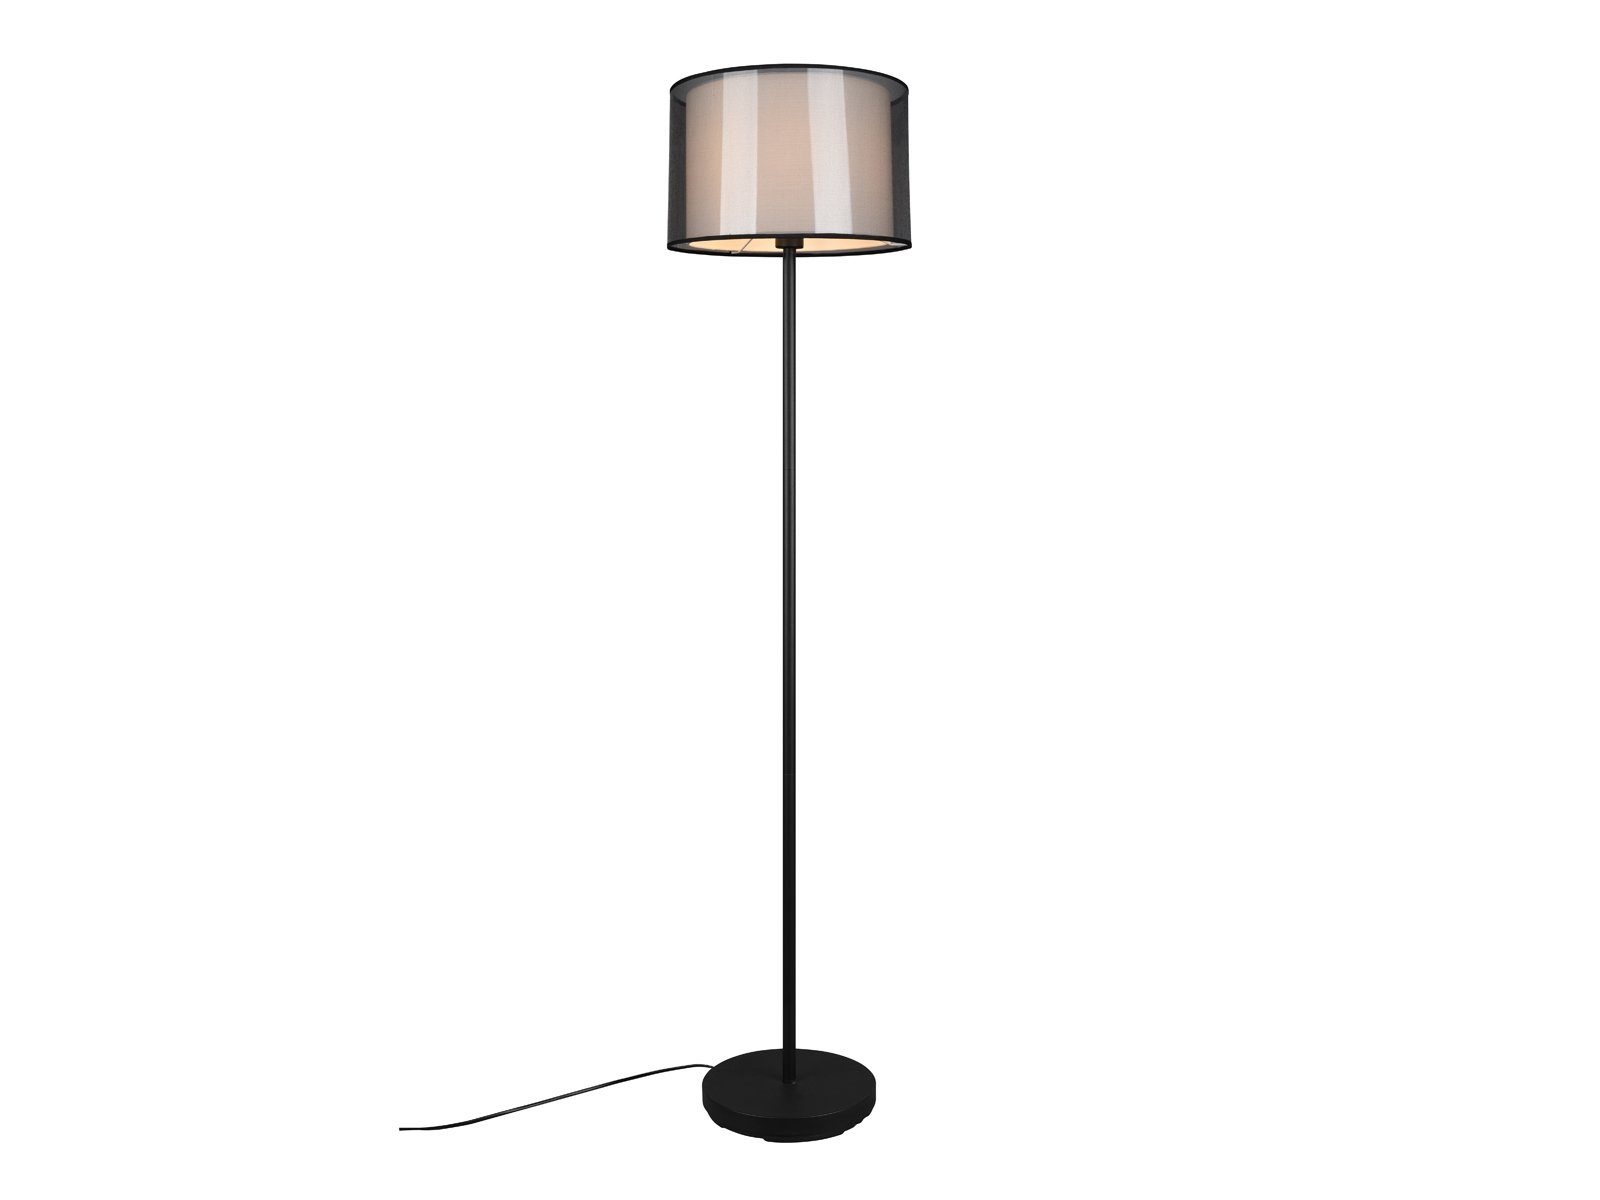 dimmbar H: meineWunschleuchte wechselbar, Lampe mit Stehlampe, Lampen-schirm, LED ausgefallene Stoff Warmweiß, LED Design-er 150cm